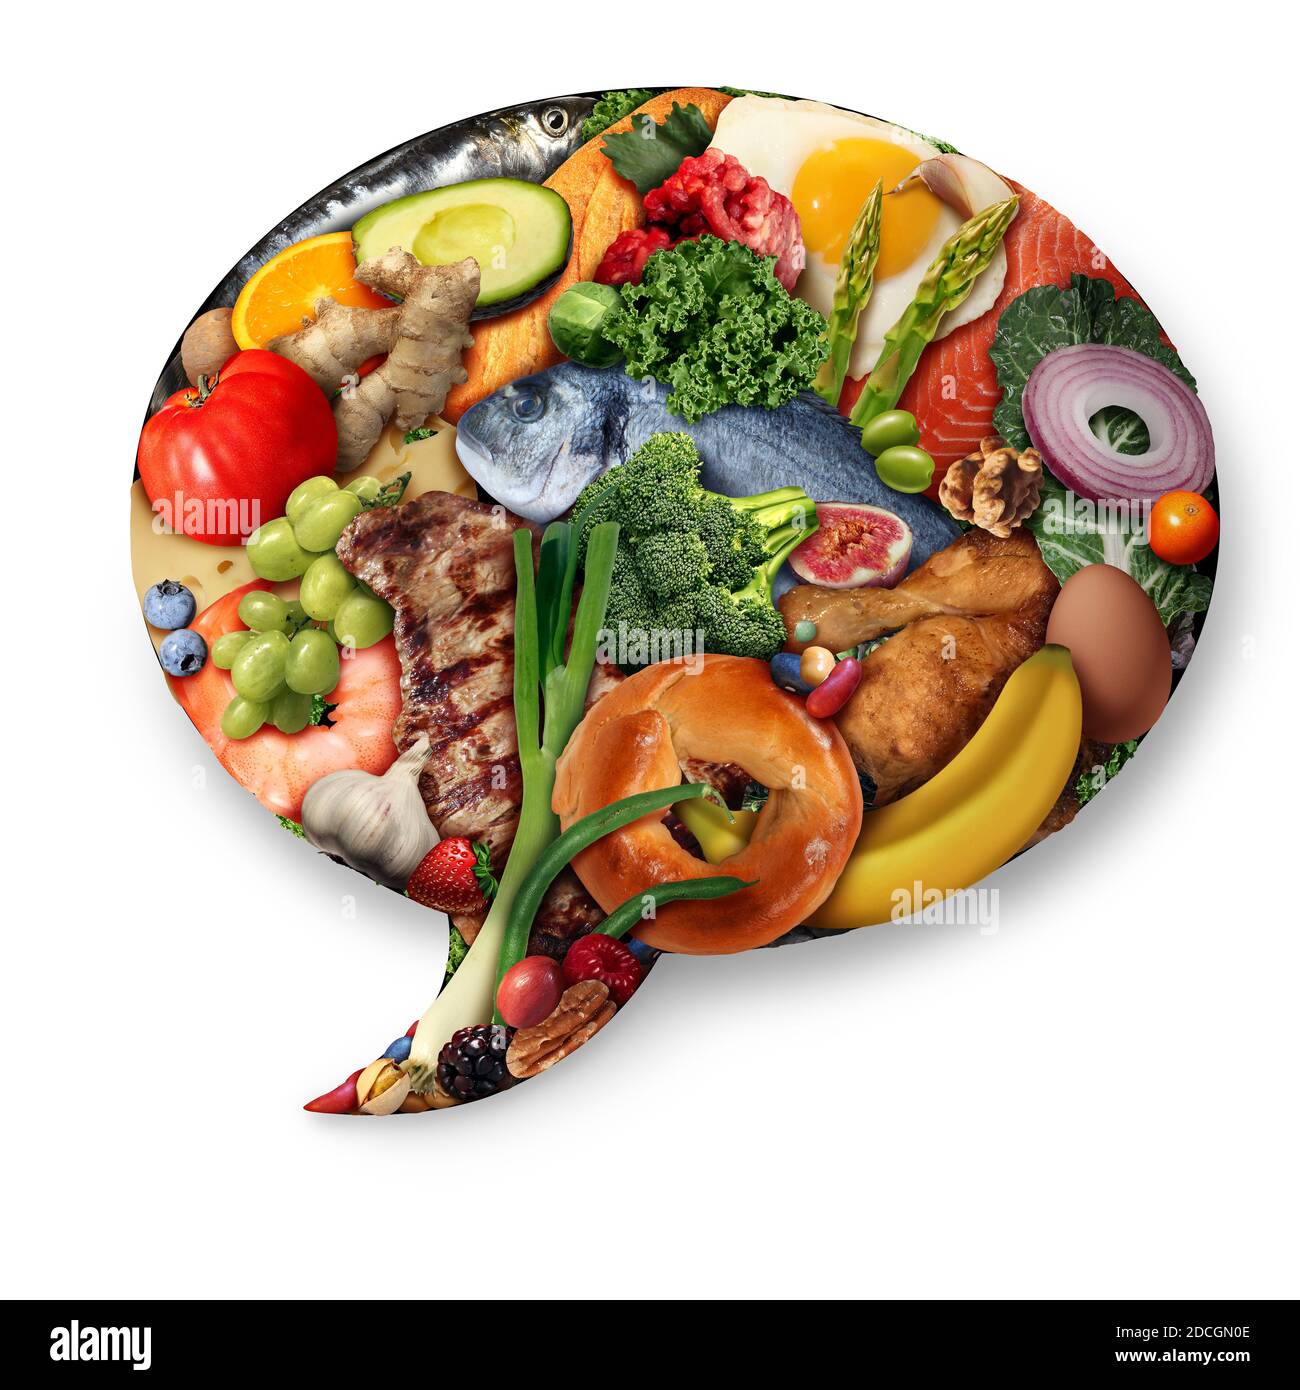 Lebensmittel-Fakten und Foodie oder Kochinformation oder ein Ernährungskonzept und Ernährungssputschen Blase mit Fleisch Fisch Obst und Gemüse. Stockfoto